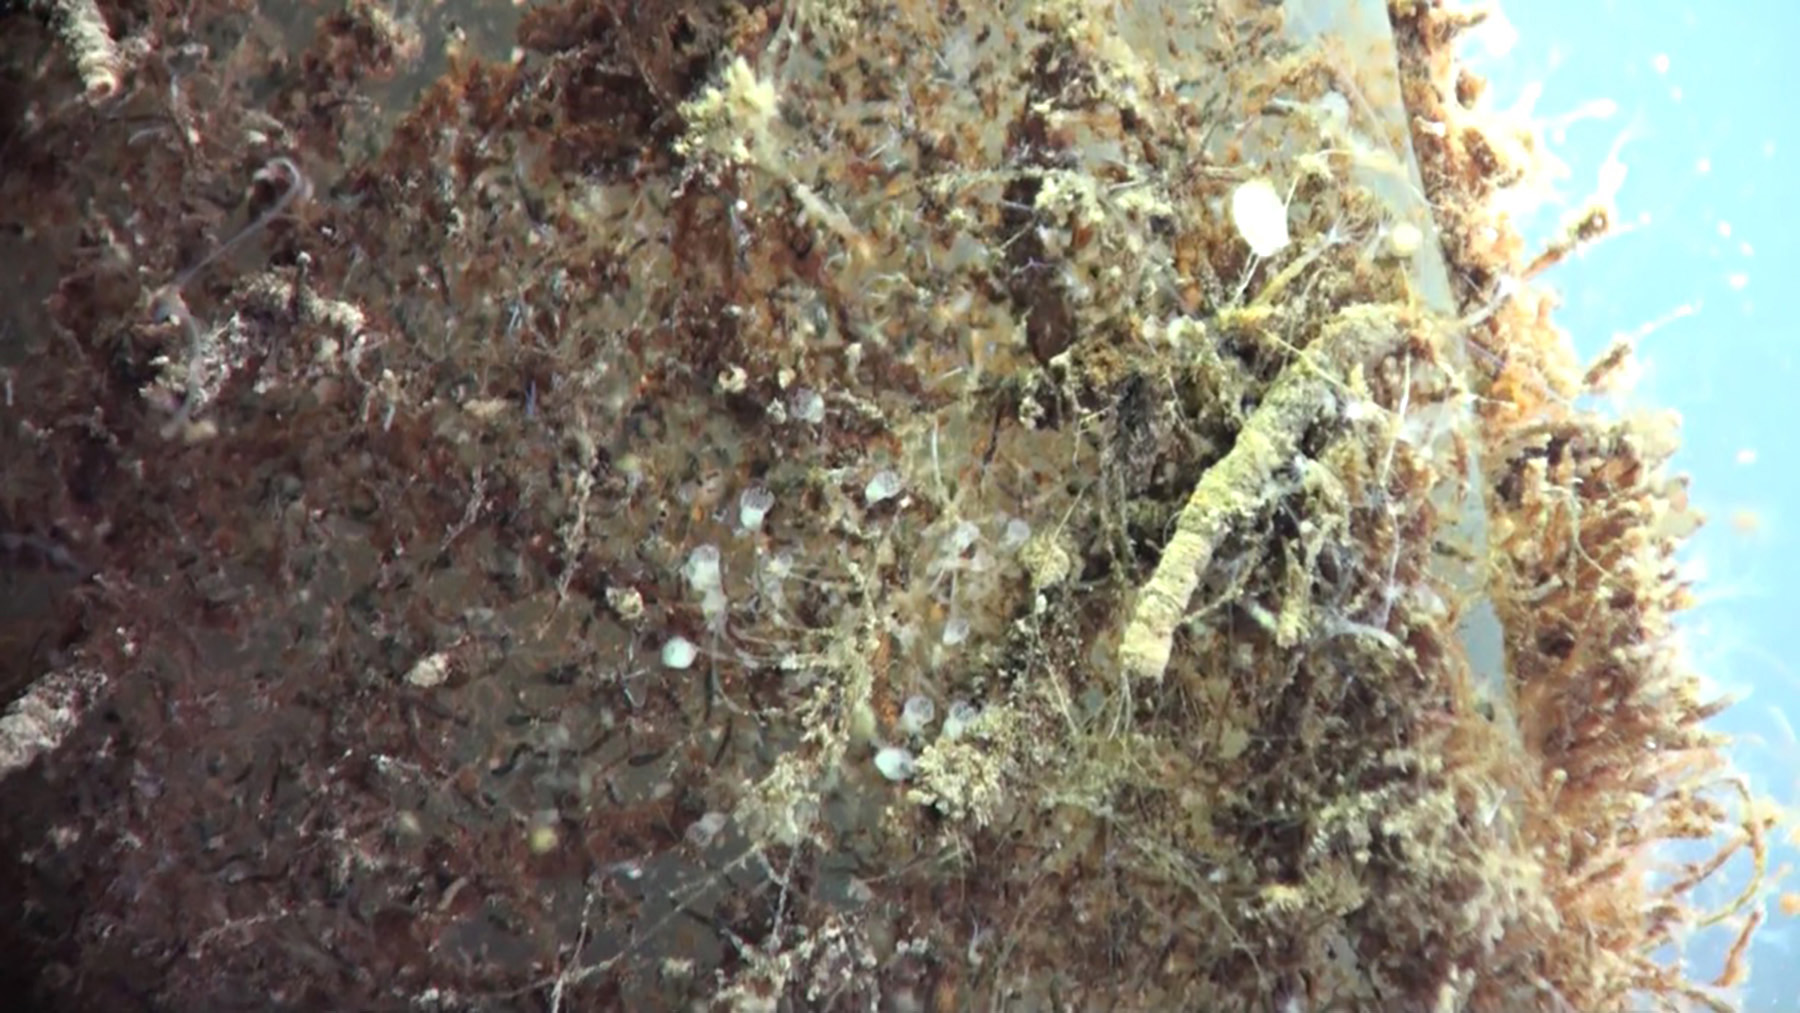 Entoprocta on Biofilm, next to tube worm.